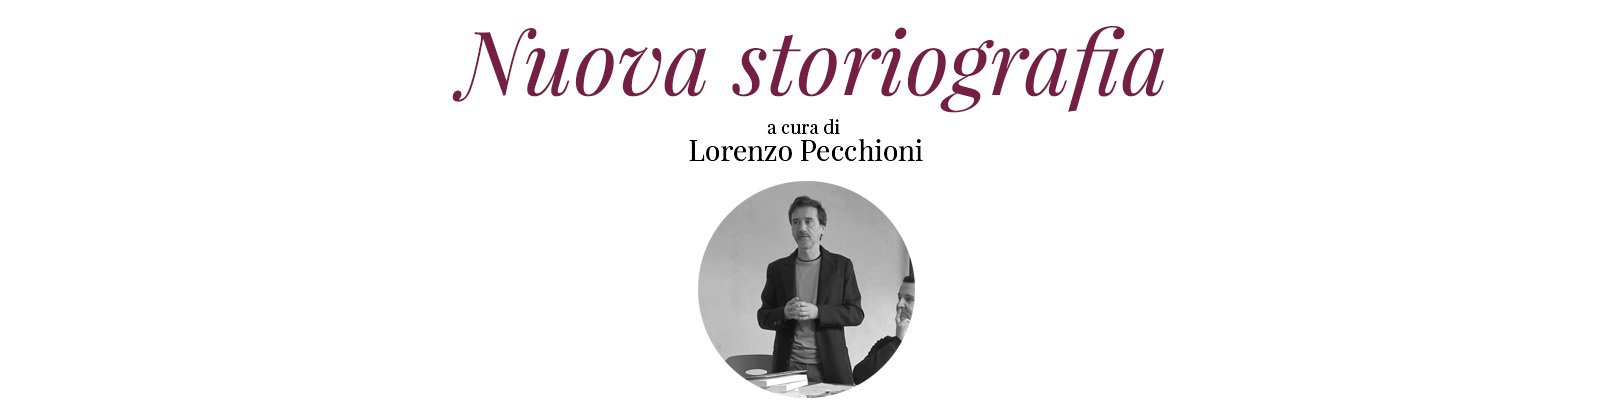 Lorenzo Pecchioni collana nuova storiografia